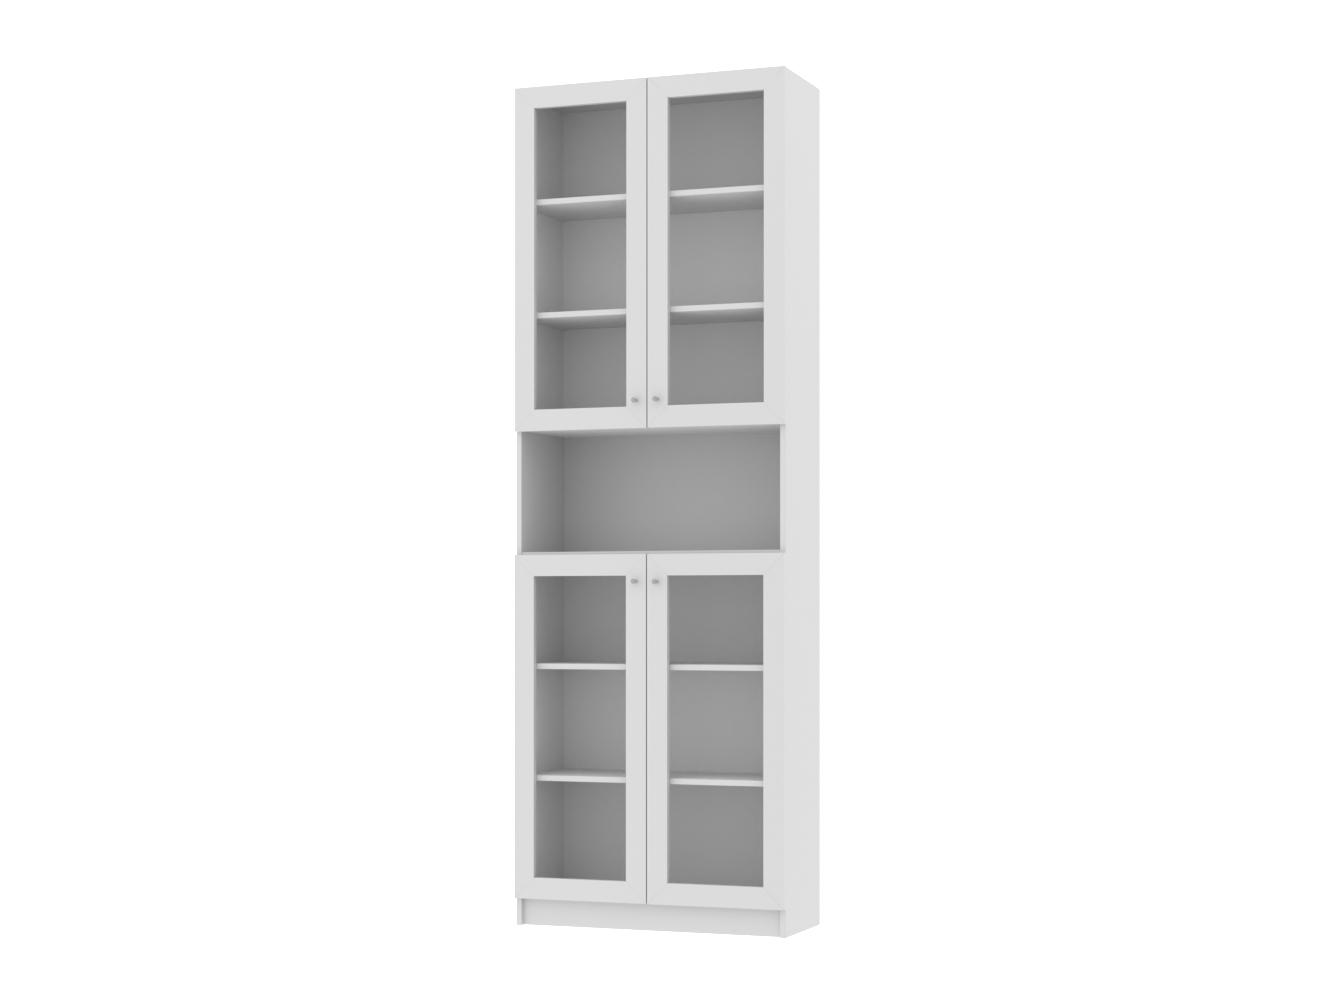 Изображение товара Книжный шкаф Билли 71 white ИКЕА (IKEA), 80x30x237 см на сайте adeta.ru